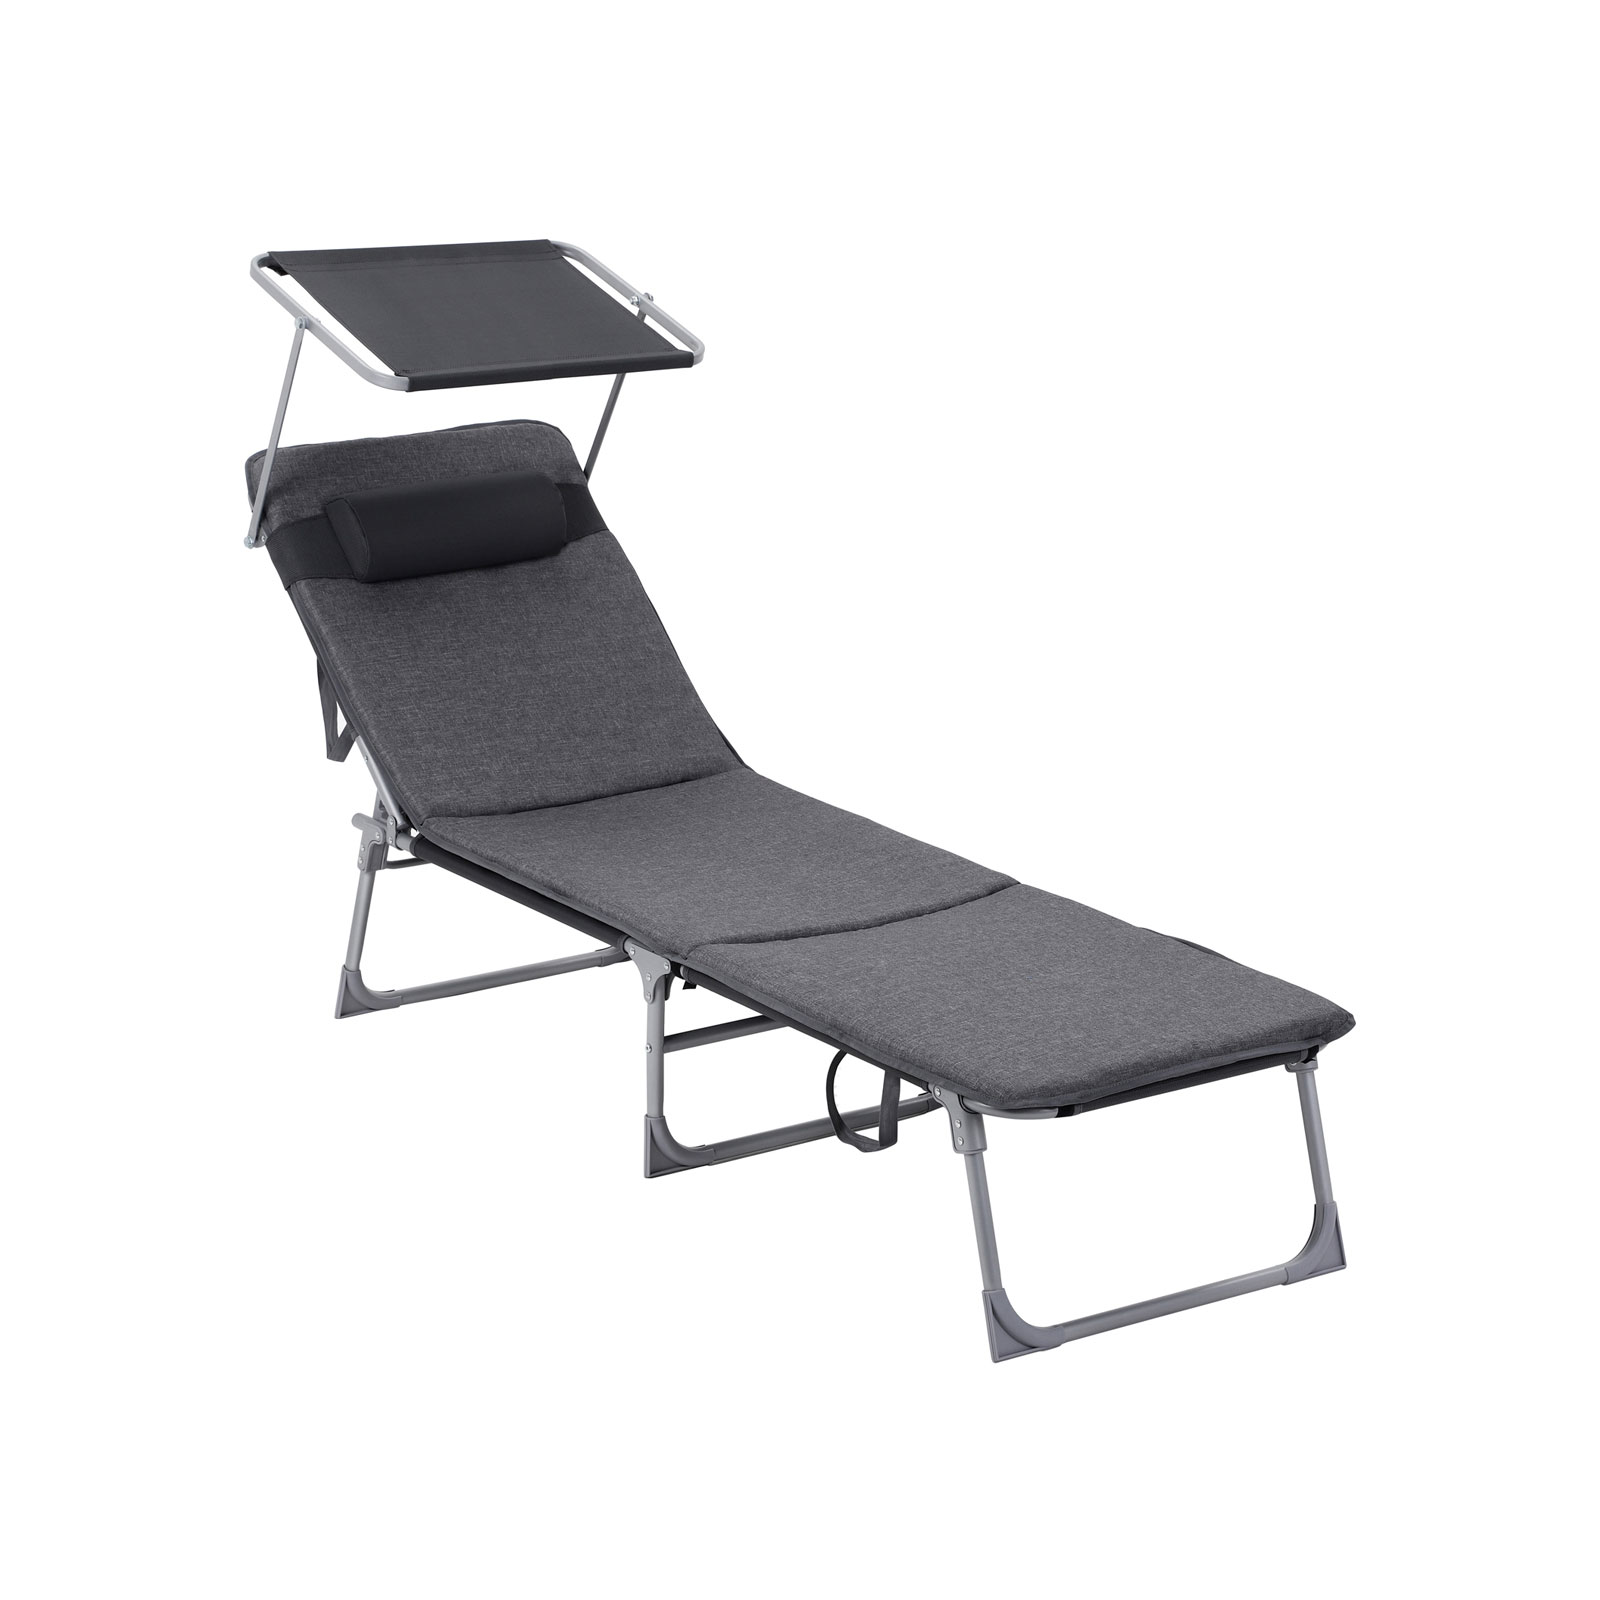 Ligstoel – Buitenstoel – Met zonnekap en hoofdsteun – Donkergrijs